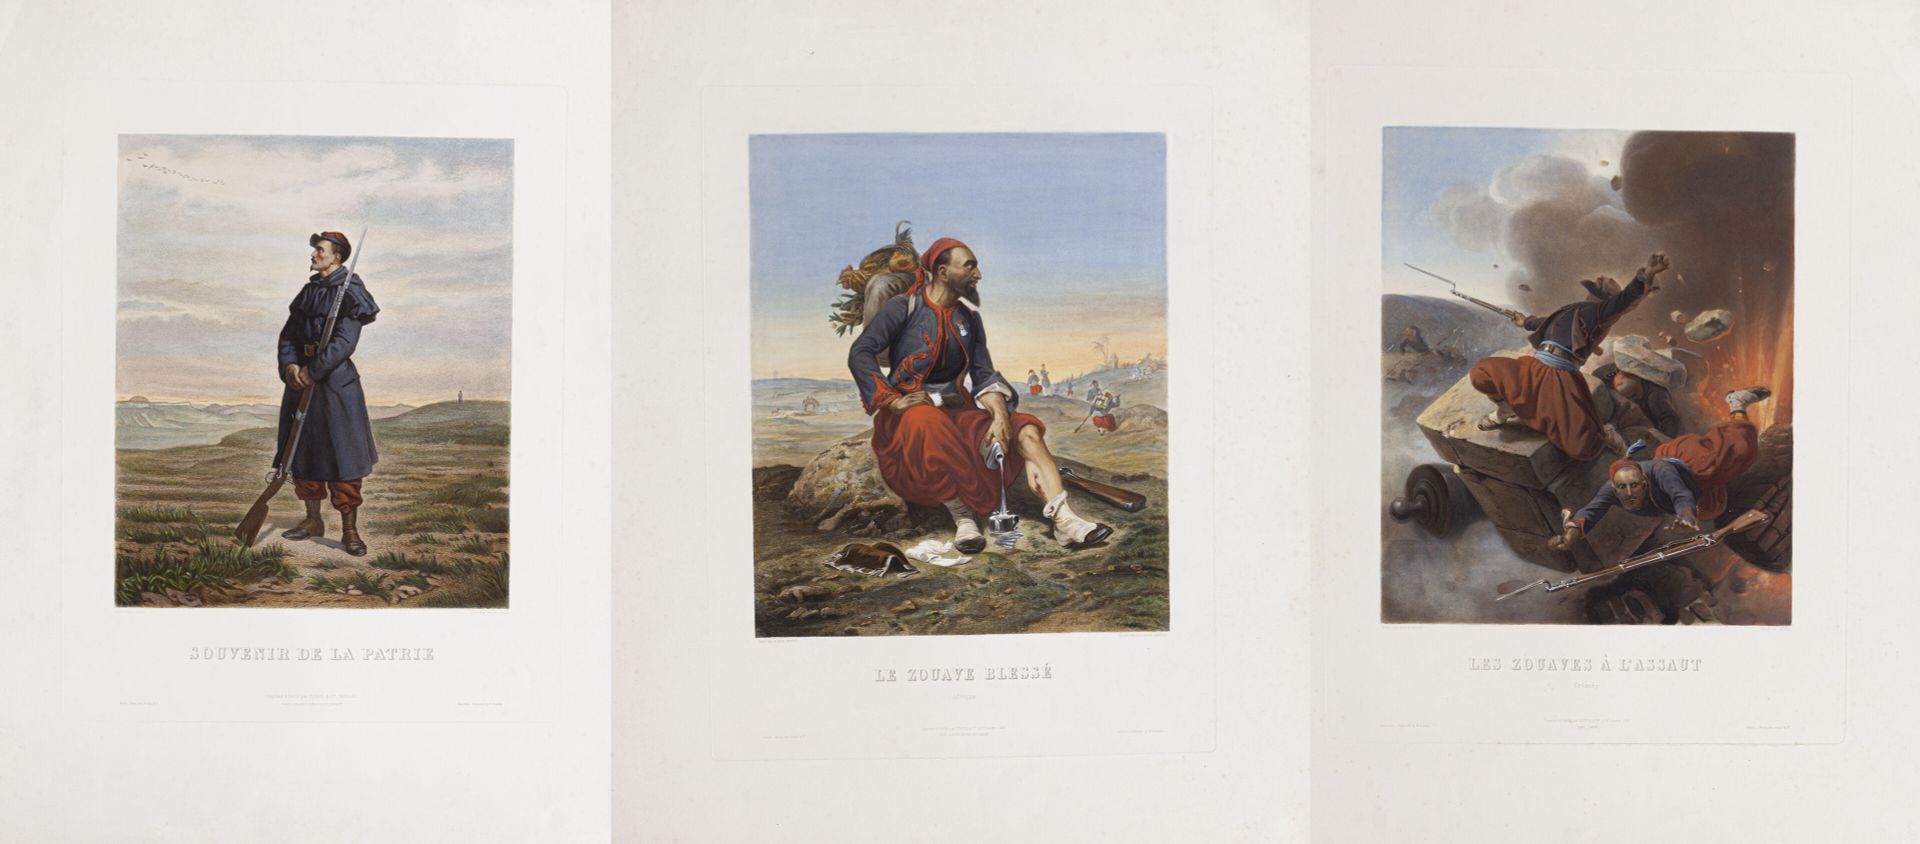 Null D'après Horace VERNET(1789 - 1863)

Les zouaves à l'assaut et les zouaves b&hellip;